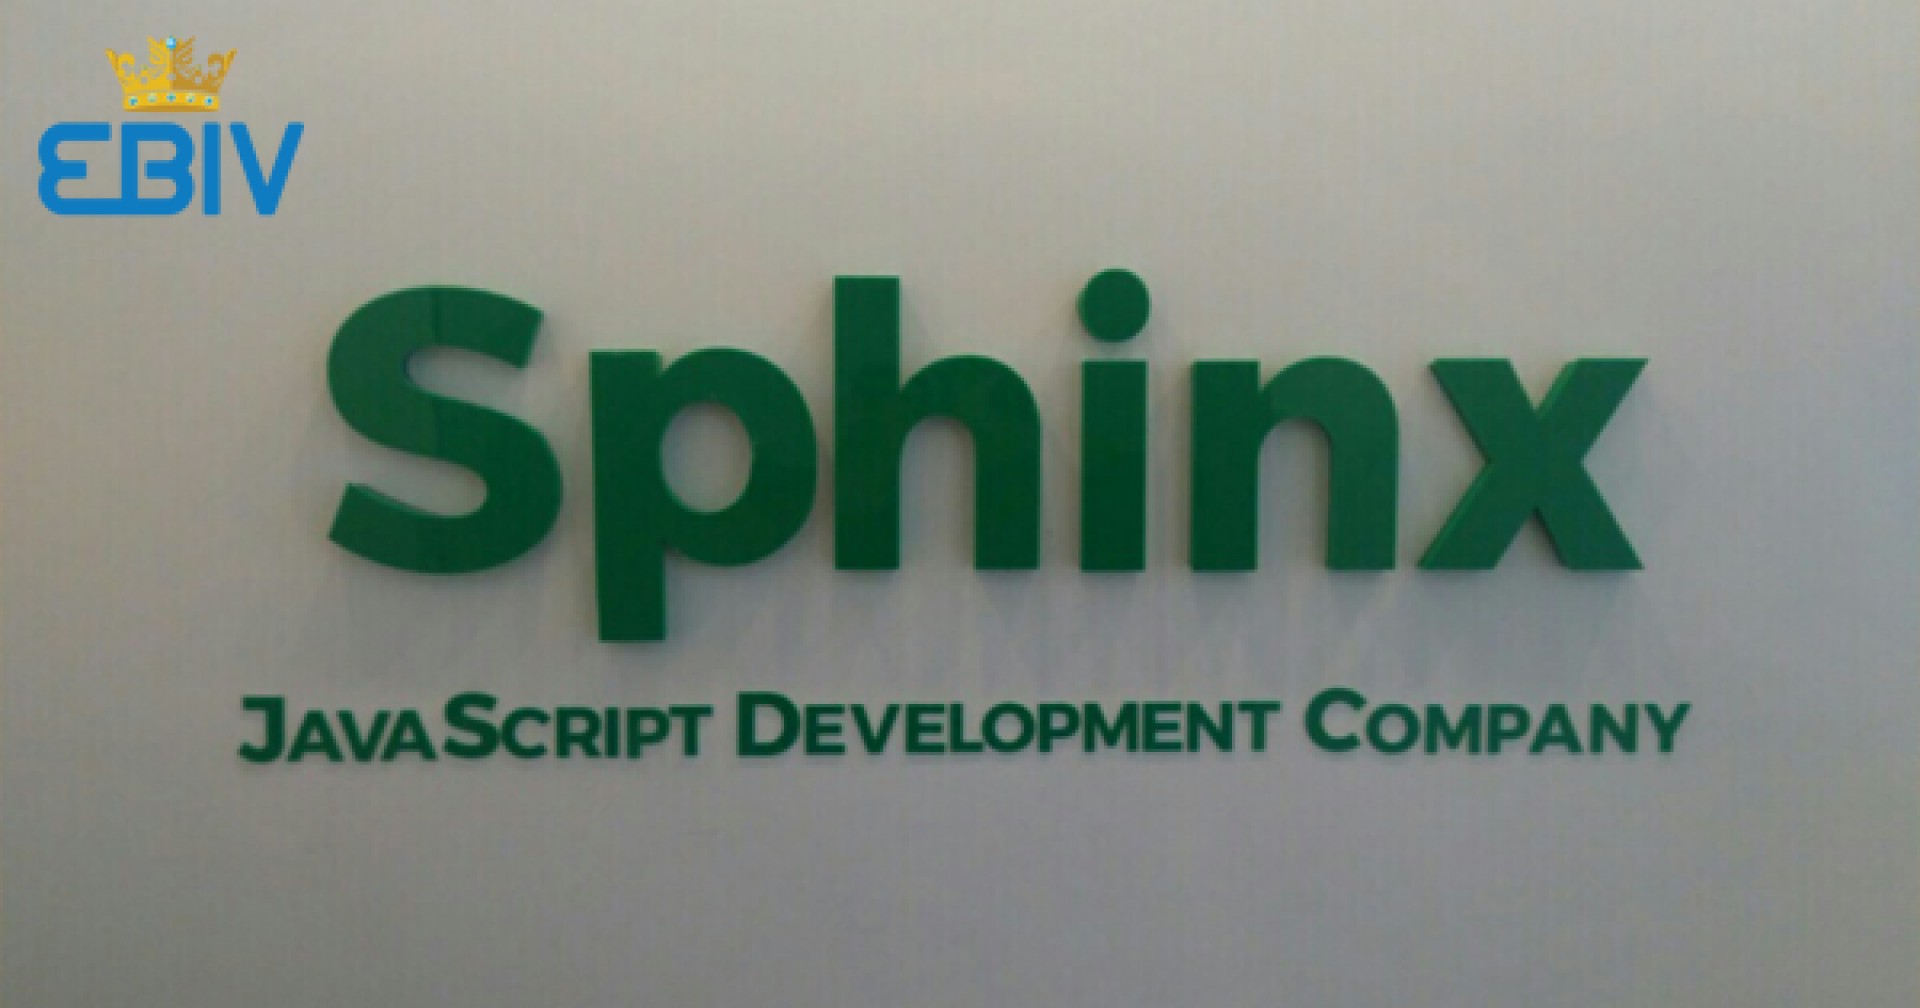 Sphinx tuyển thực tập sinh Sales biết 1 trong các thứ tiếng Anh, Pháp, Đức, Tây Ban Nha.